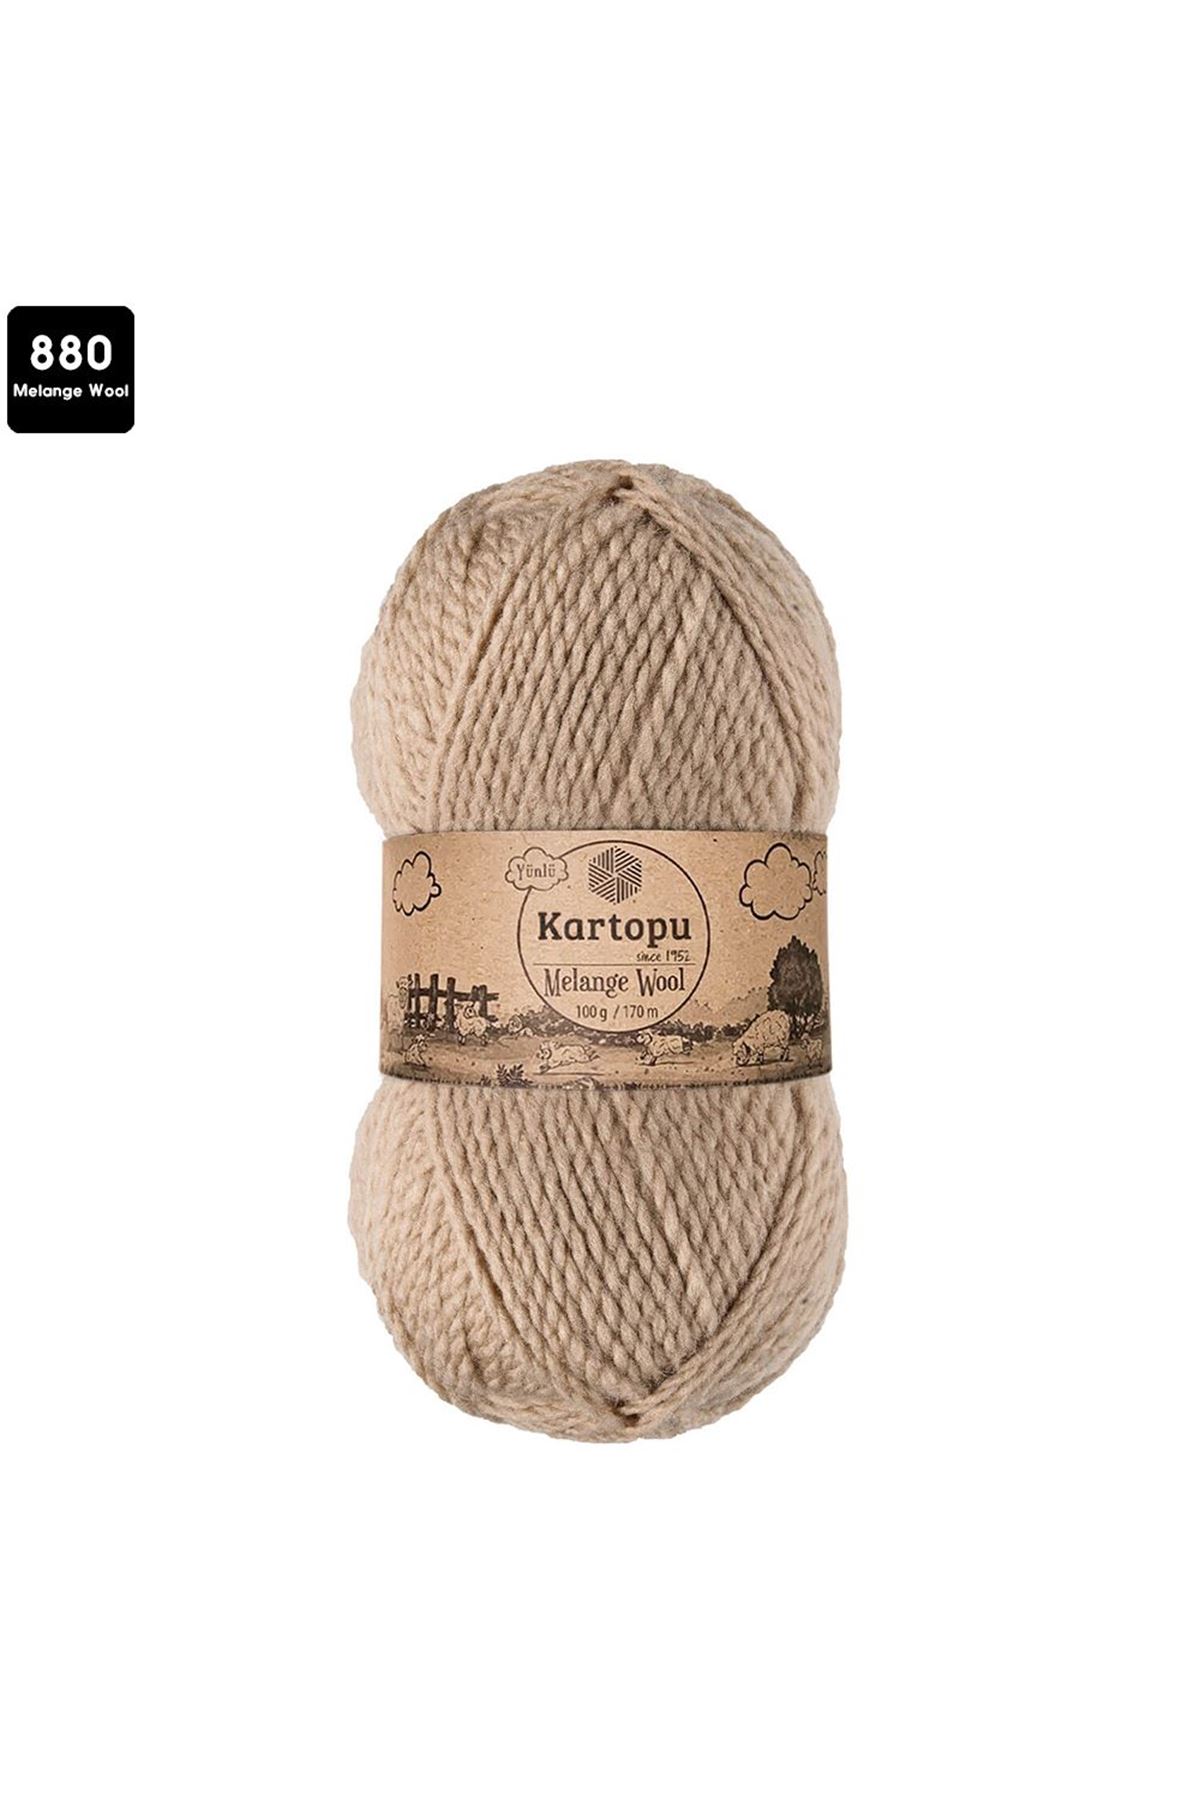 Kartopu Melange Wool Renk No:880